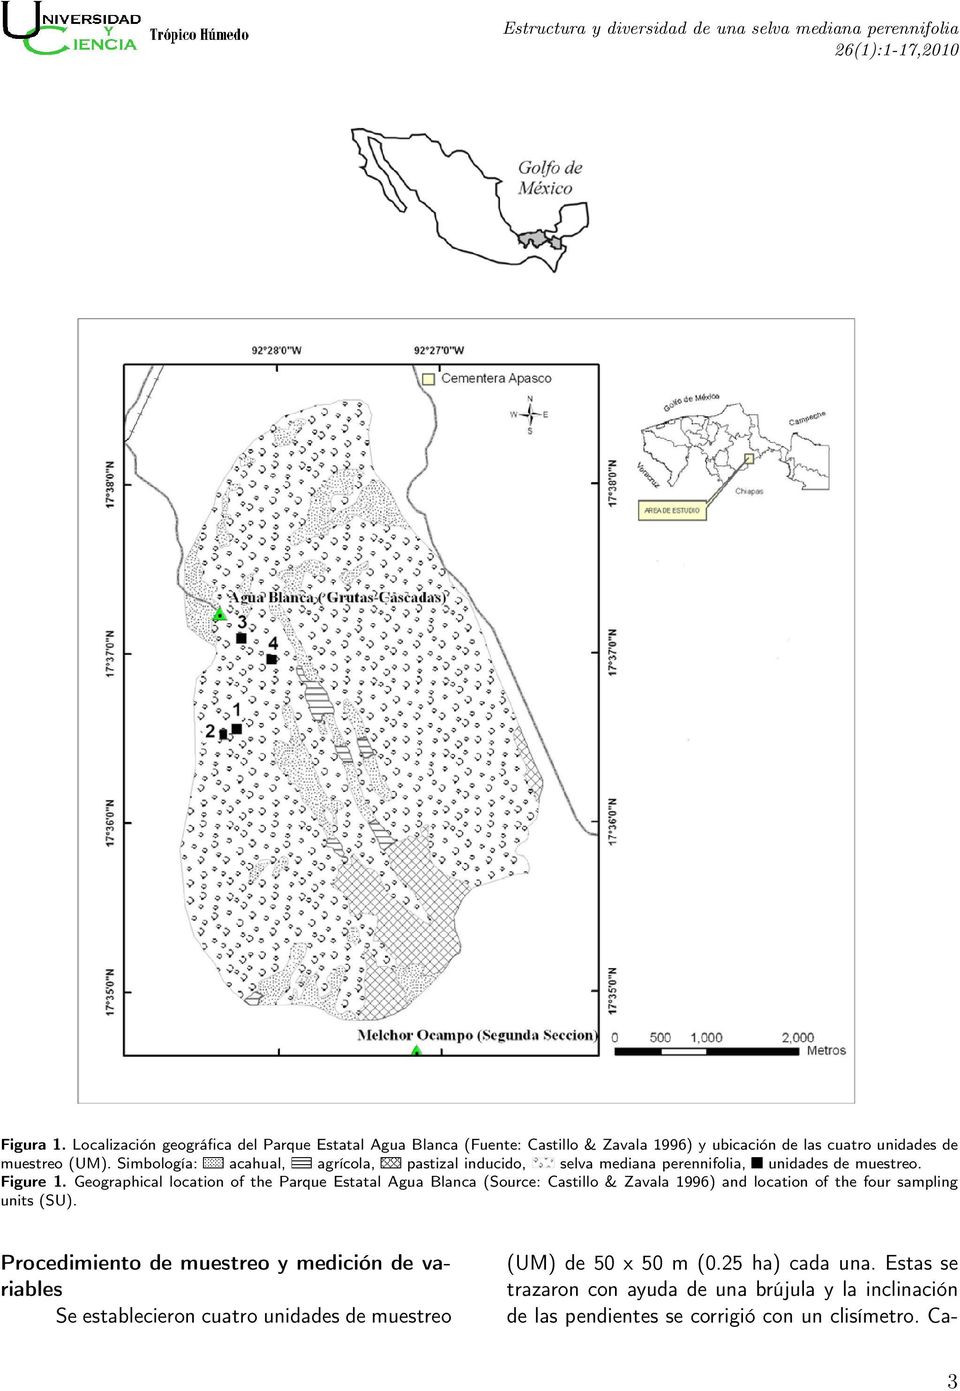 Simbología: acahual, agrícola, pastizal inducido, selva mediana perennifolia, unidades de muestreo. Figure 1.